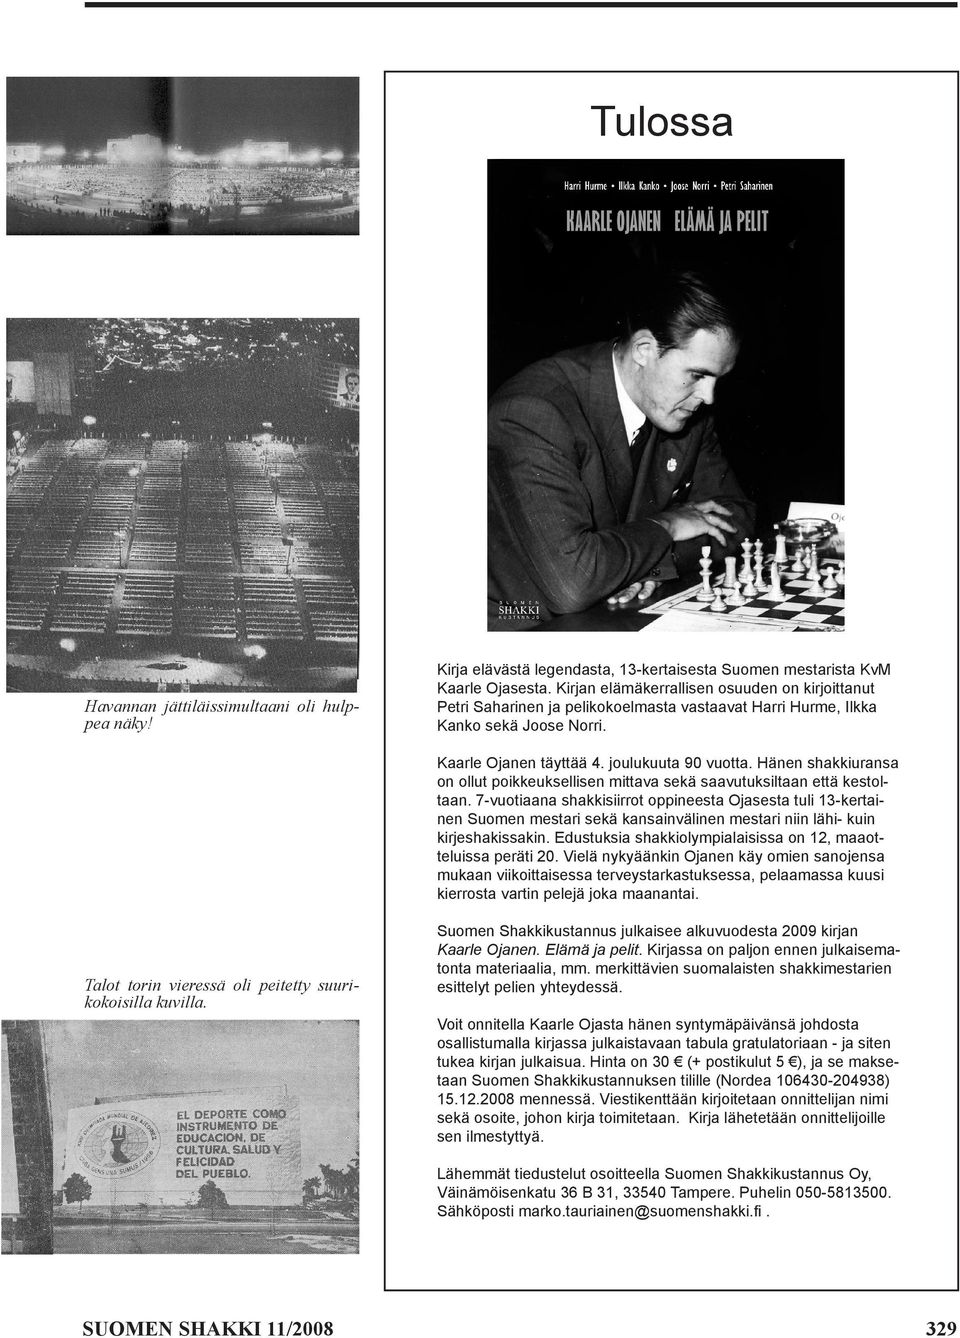 Hänen shakkiuransa on ollut poikkeuksellisen mittava sekä saavutuksiltaan että kestoltaan.